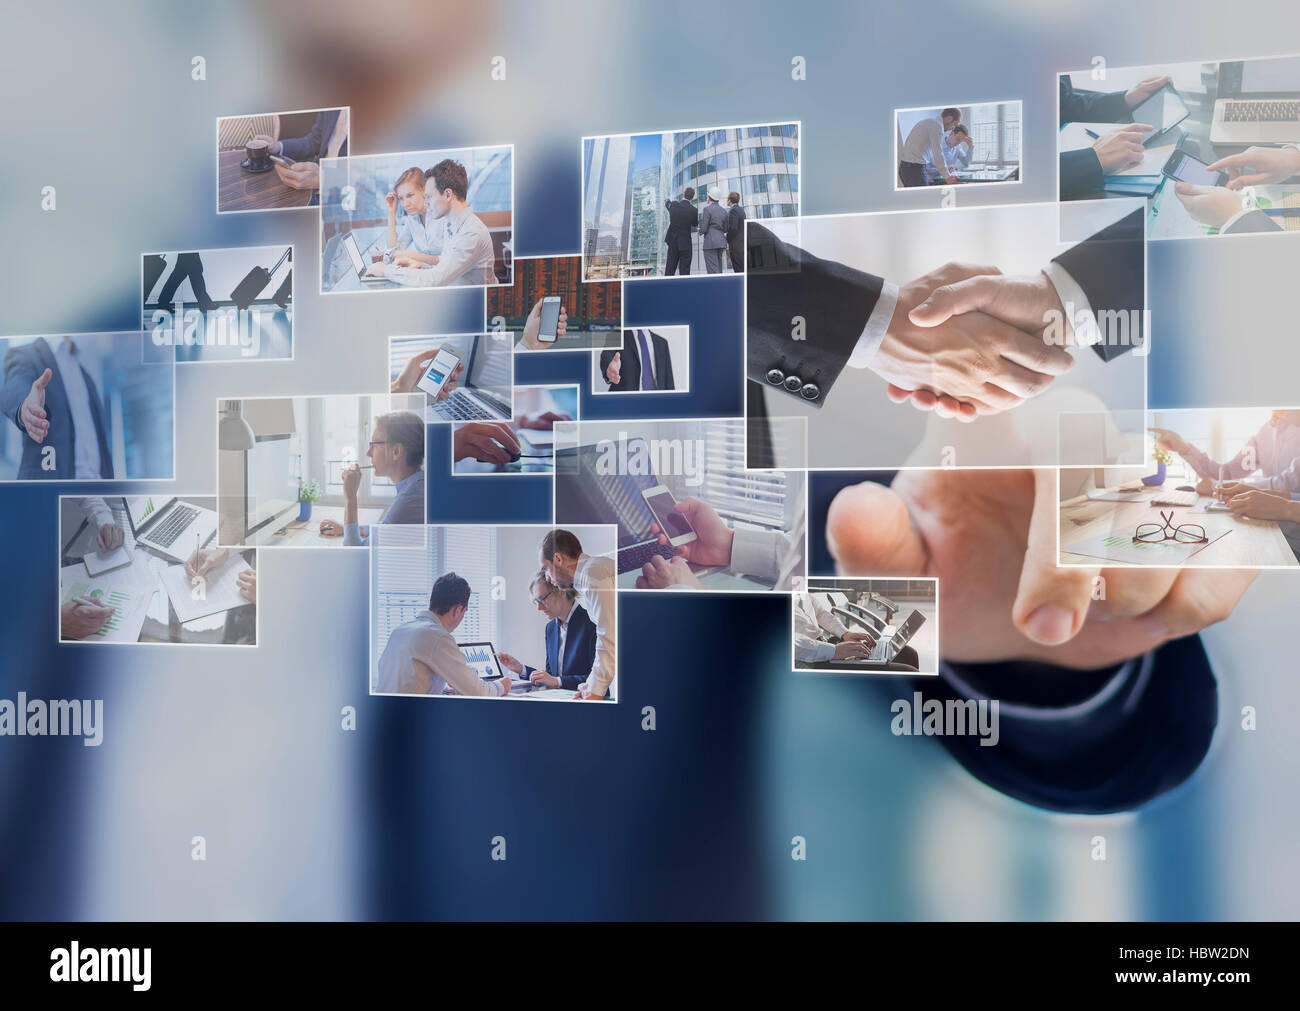 Businessman touching une photo sur un écran, l'interface numérique d'images abstraites de situations d'entreprise Banque D'Images